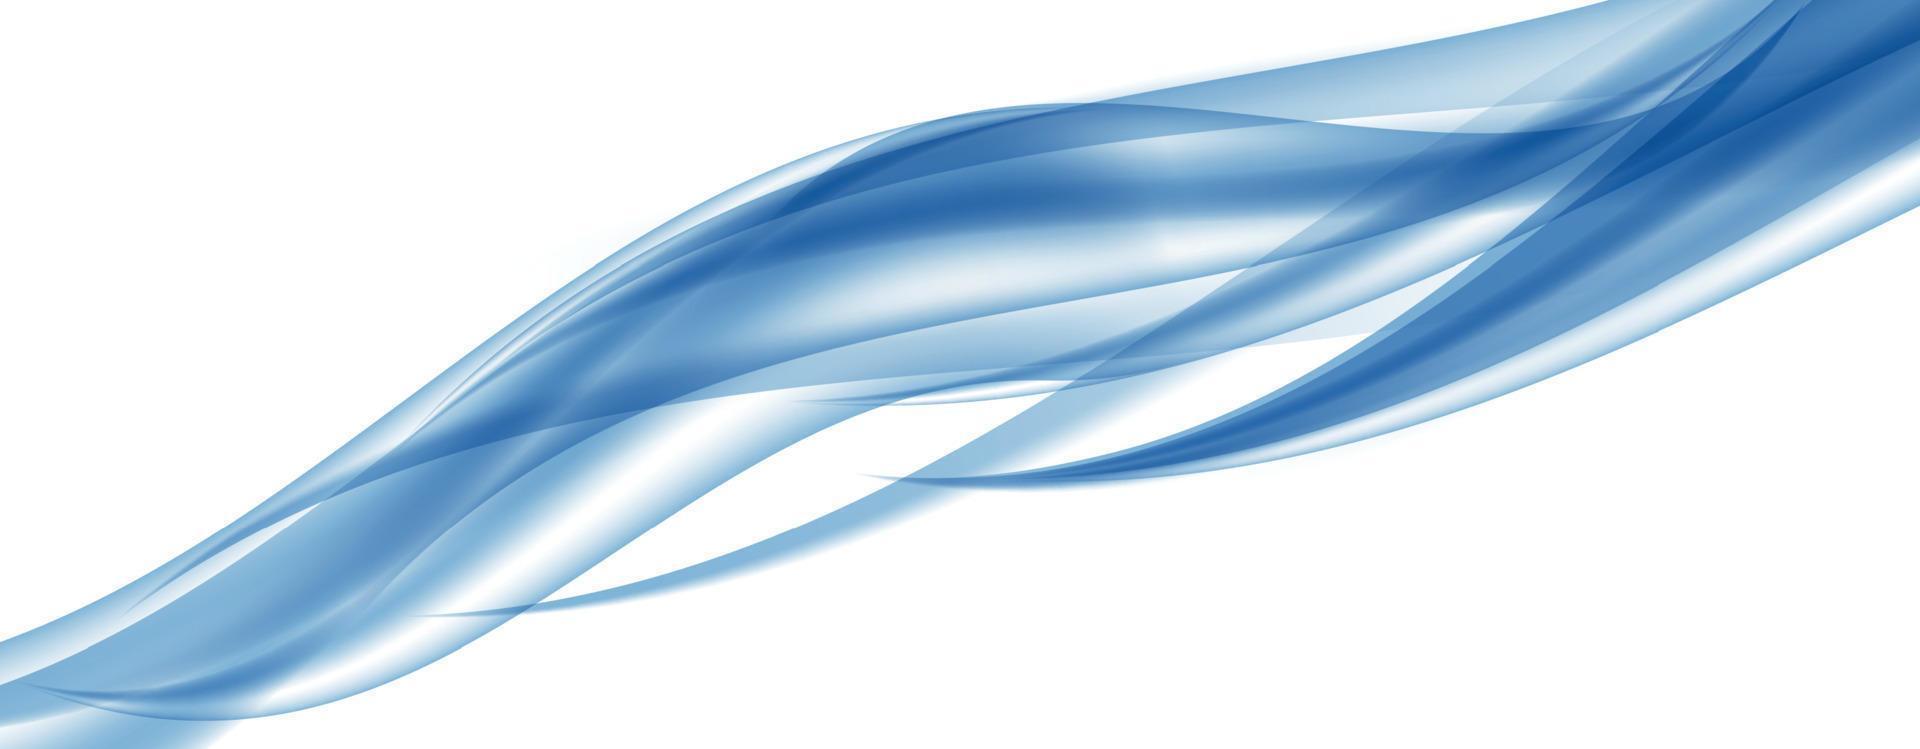 abstrakt blå våguppsättning på transparent bakgrund. vektor illustration